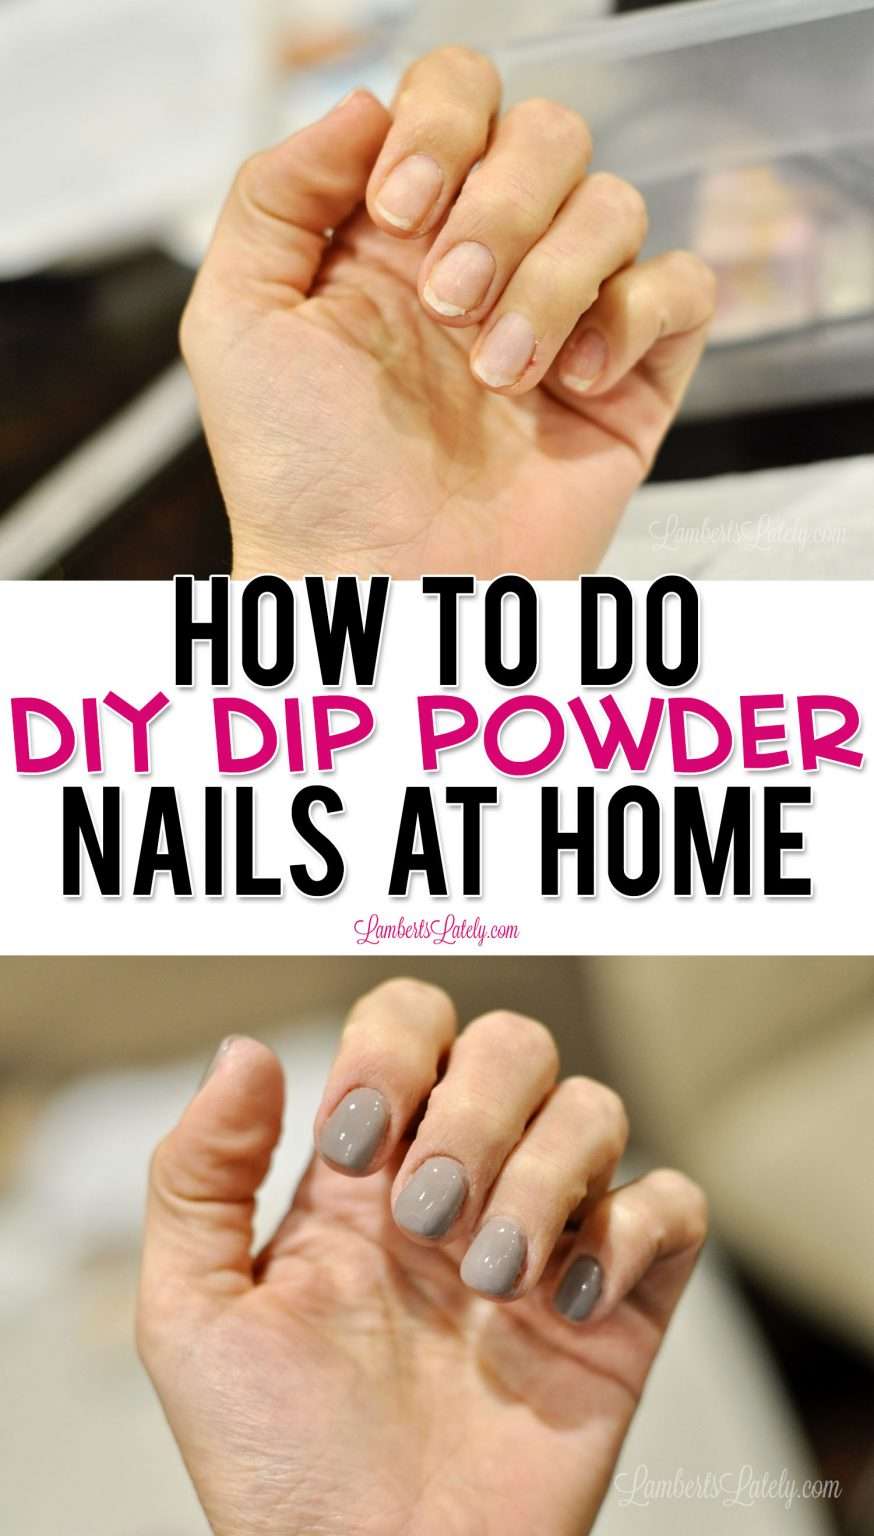 How to Do DIY Dip Powder Nails at Home